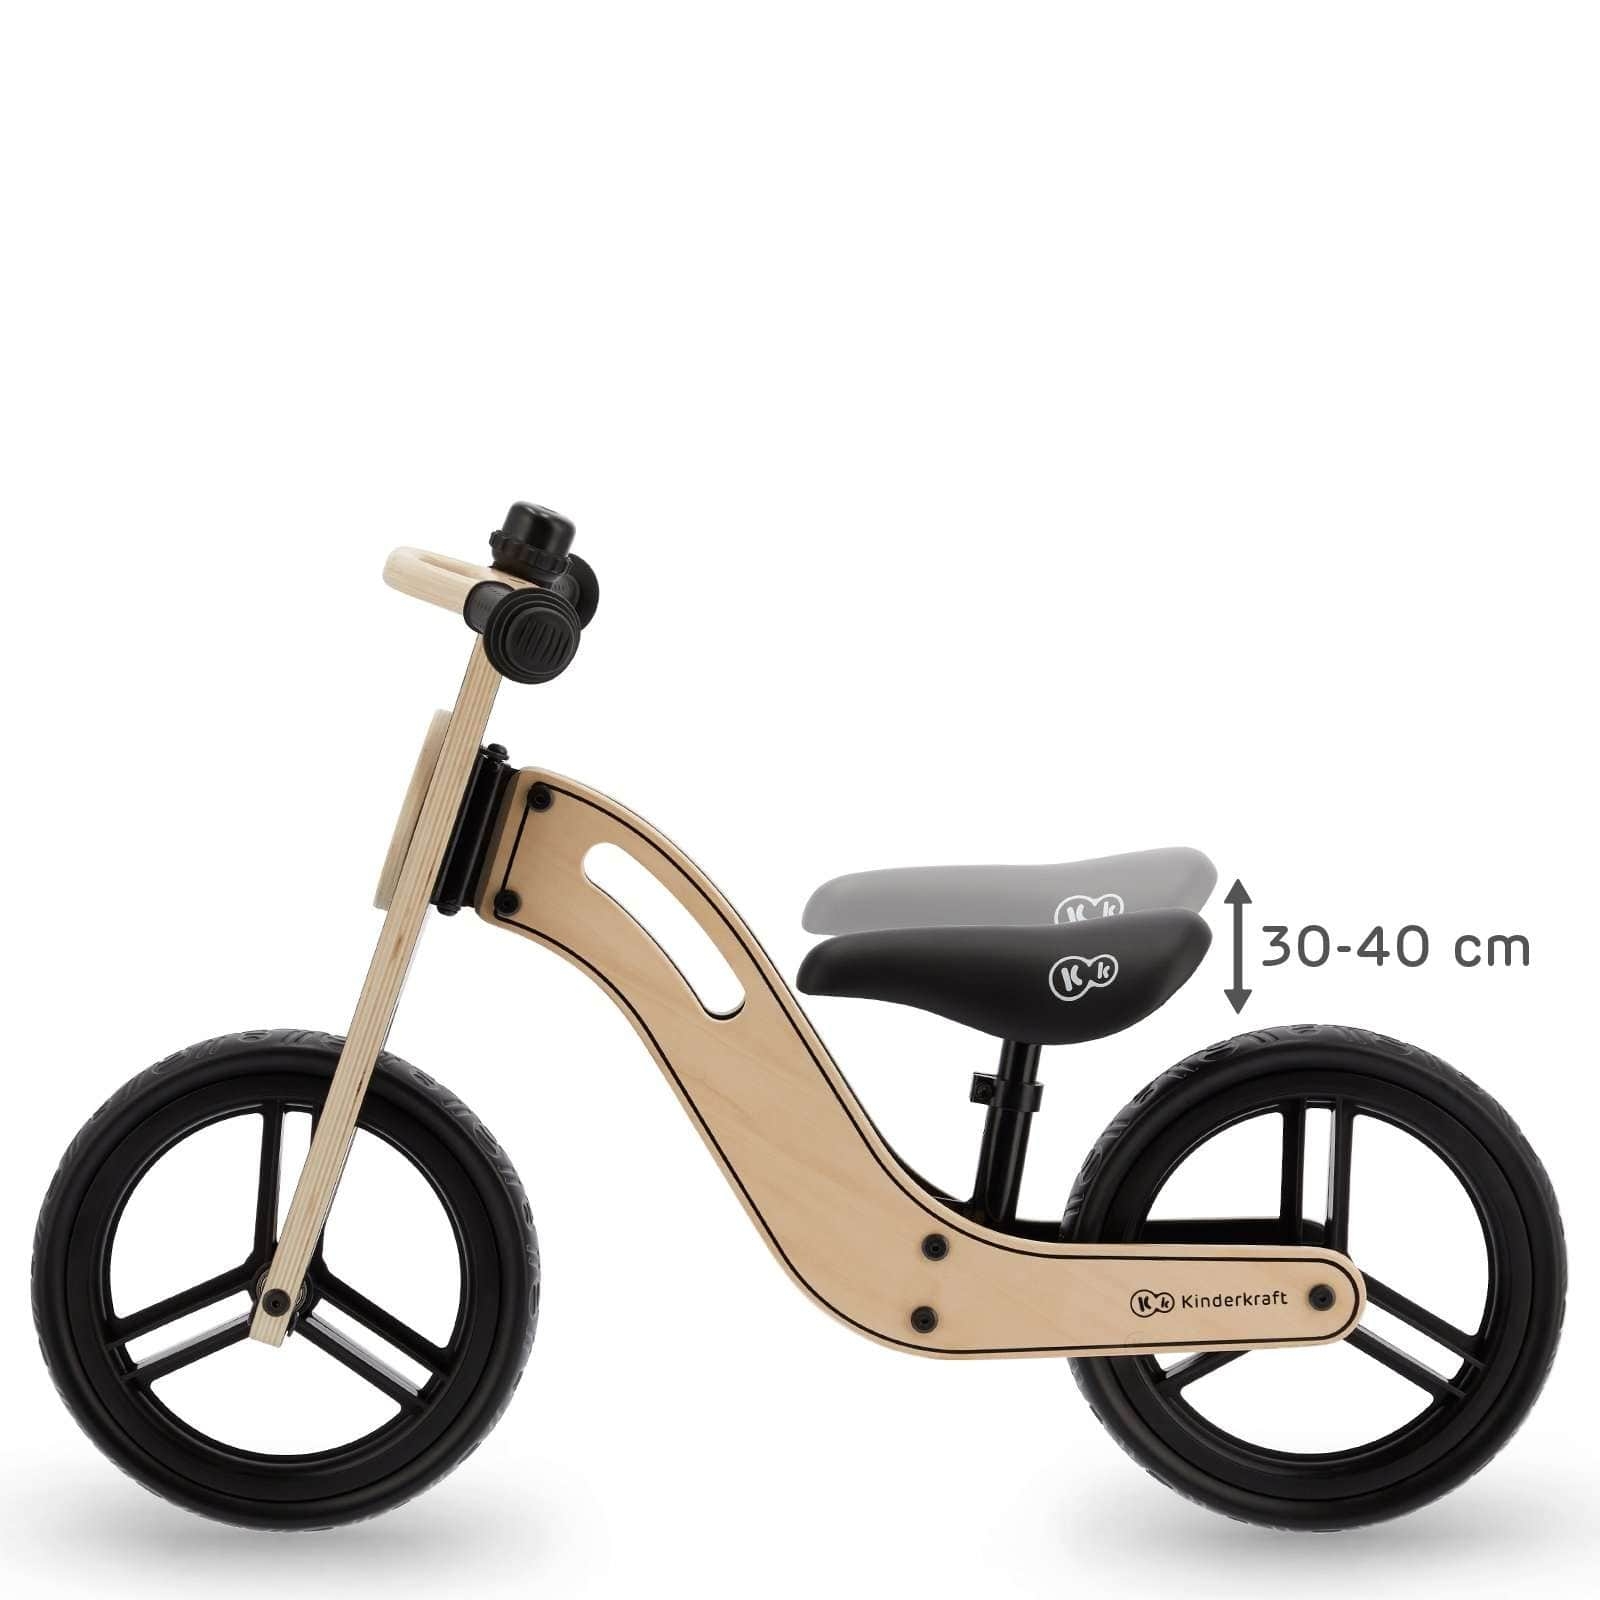 دراجة هوائية للاطفال بدون دواسات كندركرافت Kinderkraft Balance UNIQ natural - 4}